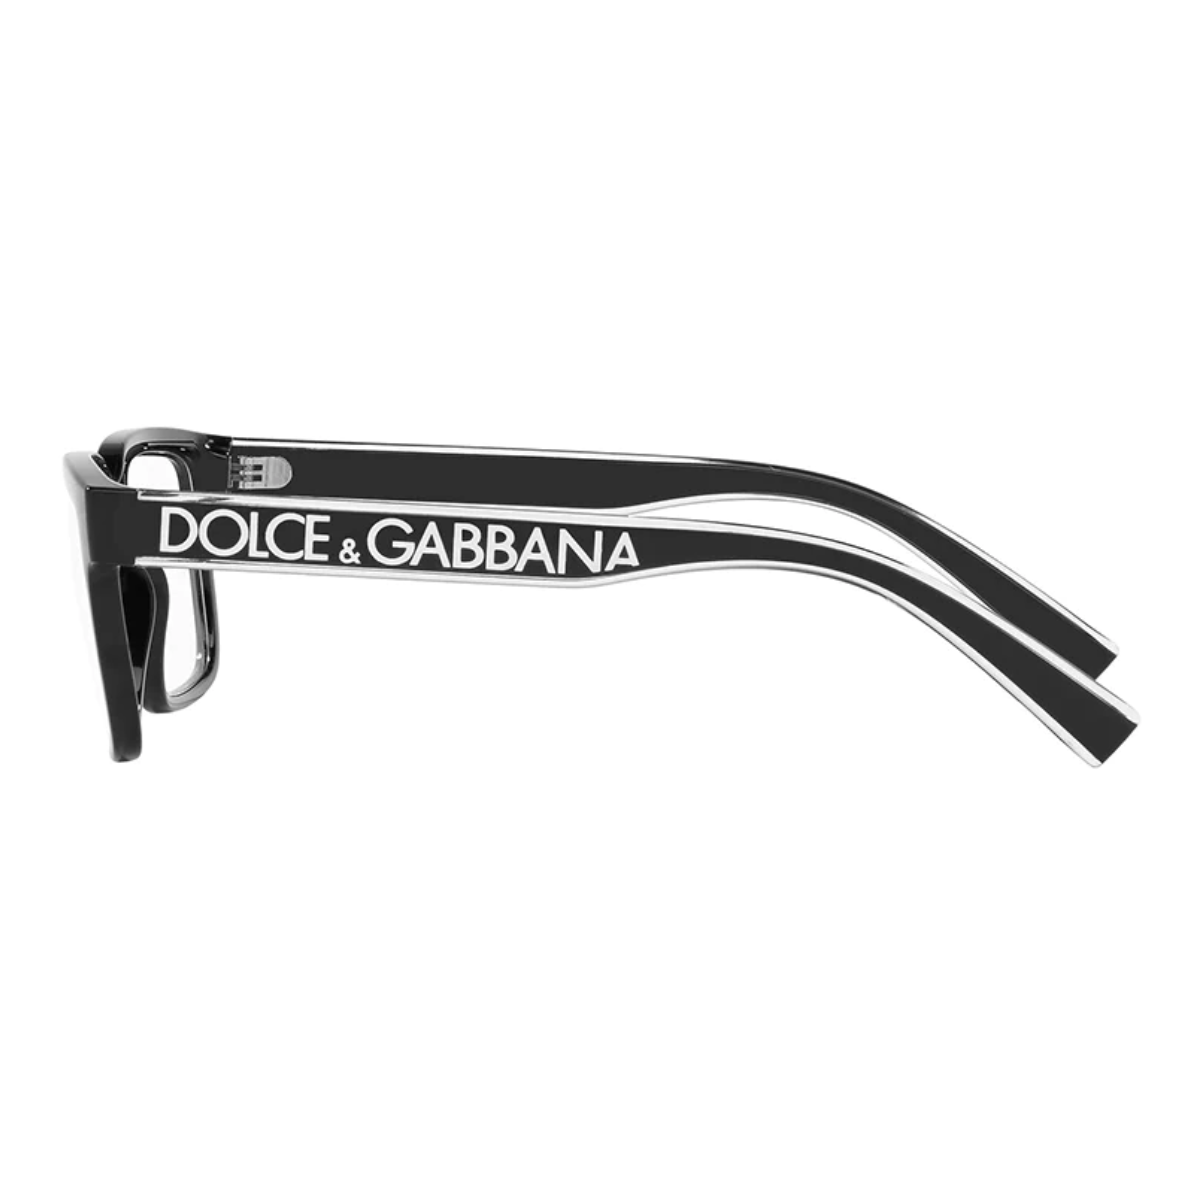 Dolce & Gabbana 5102 501 Frame